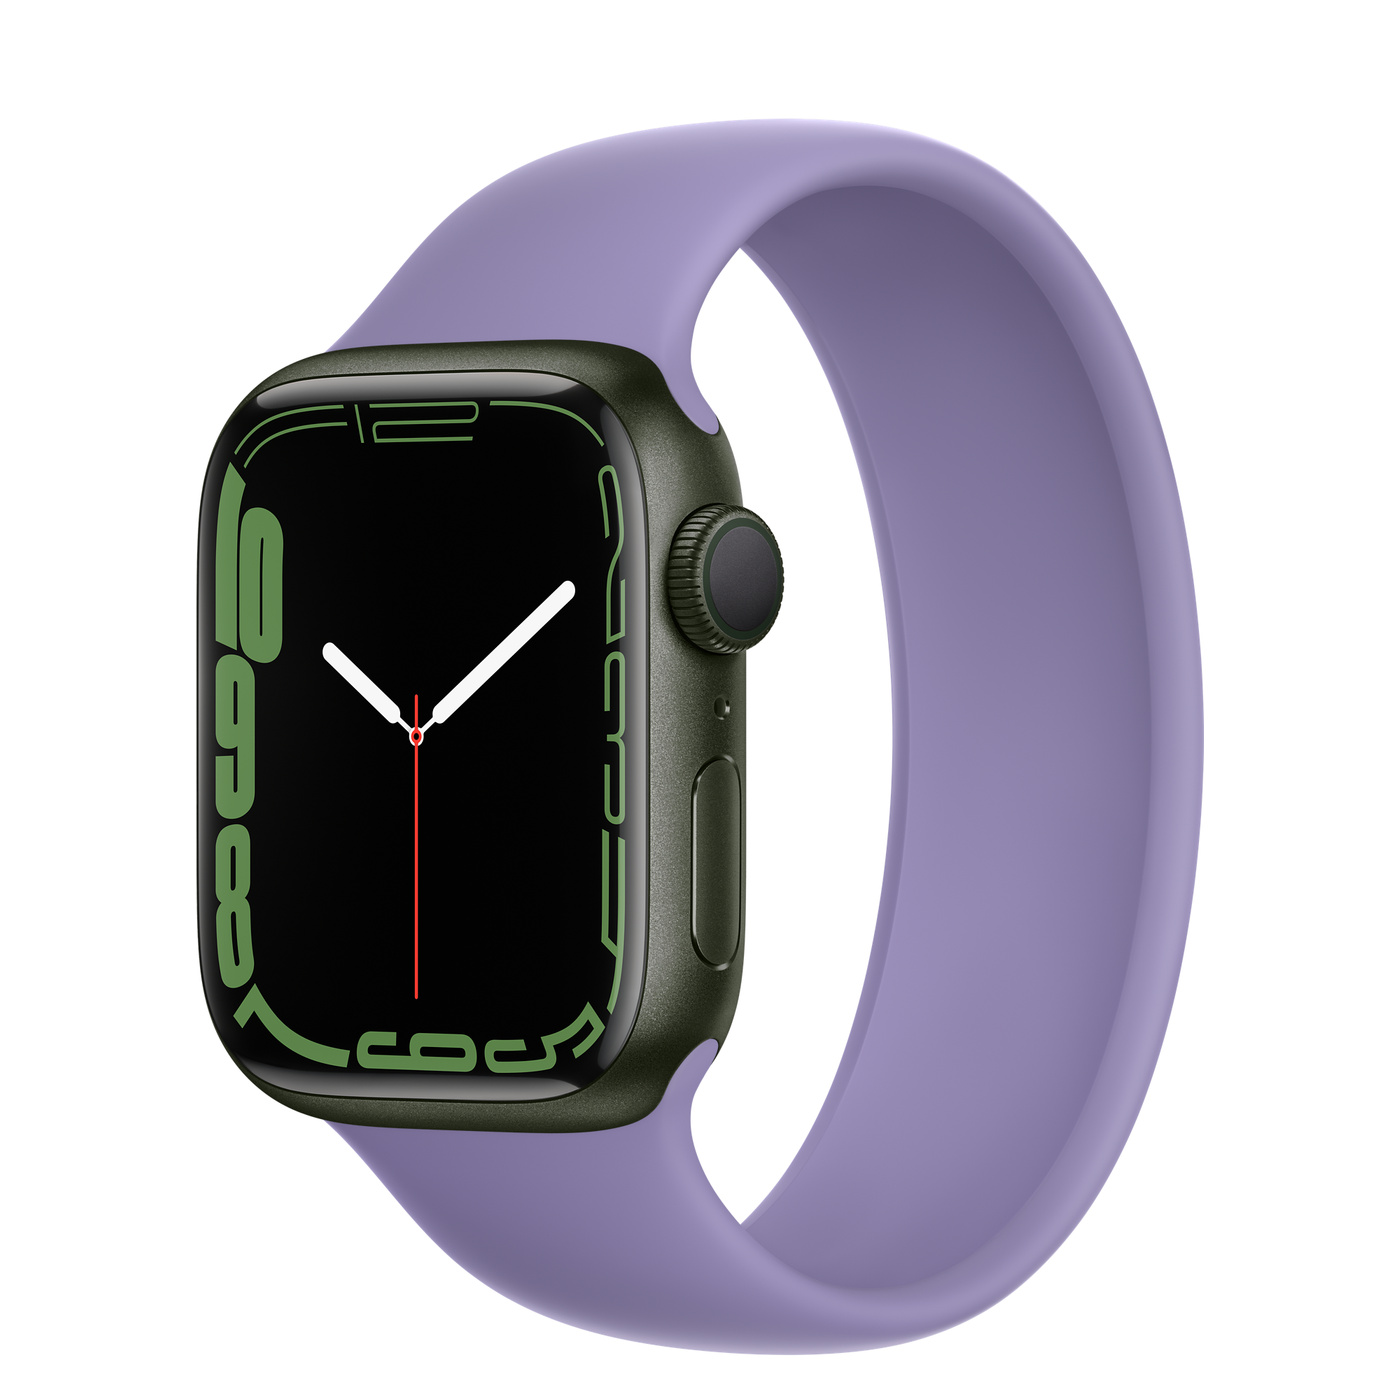 Часы watch 7 45mm. Эпл вотч 7 зеленые. Apple watch 7 45mm Midnight. Apple watch Series 7, 41mm, Midnight, Midnight Sport Band. Apple watch Nike Series 7 41mm.